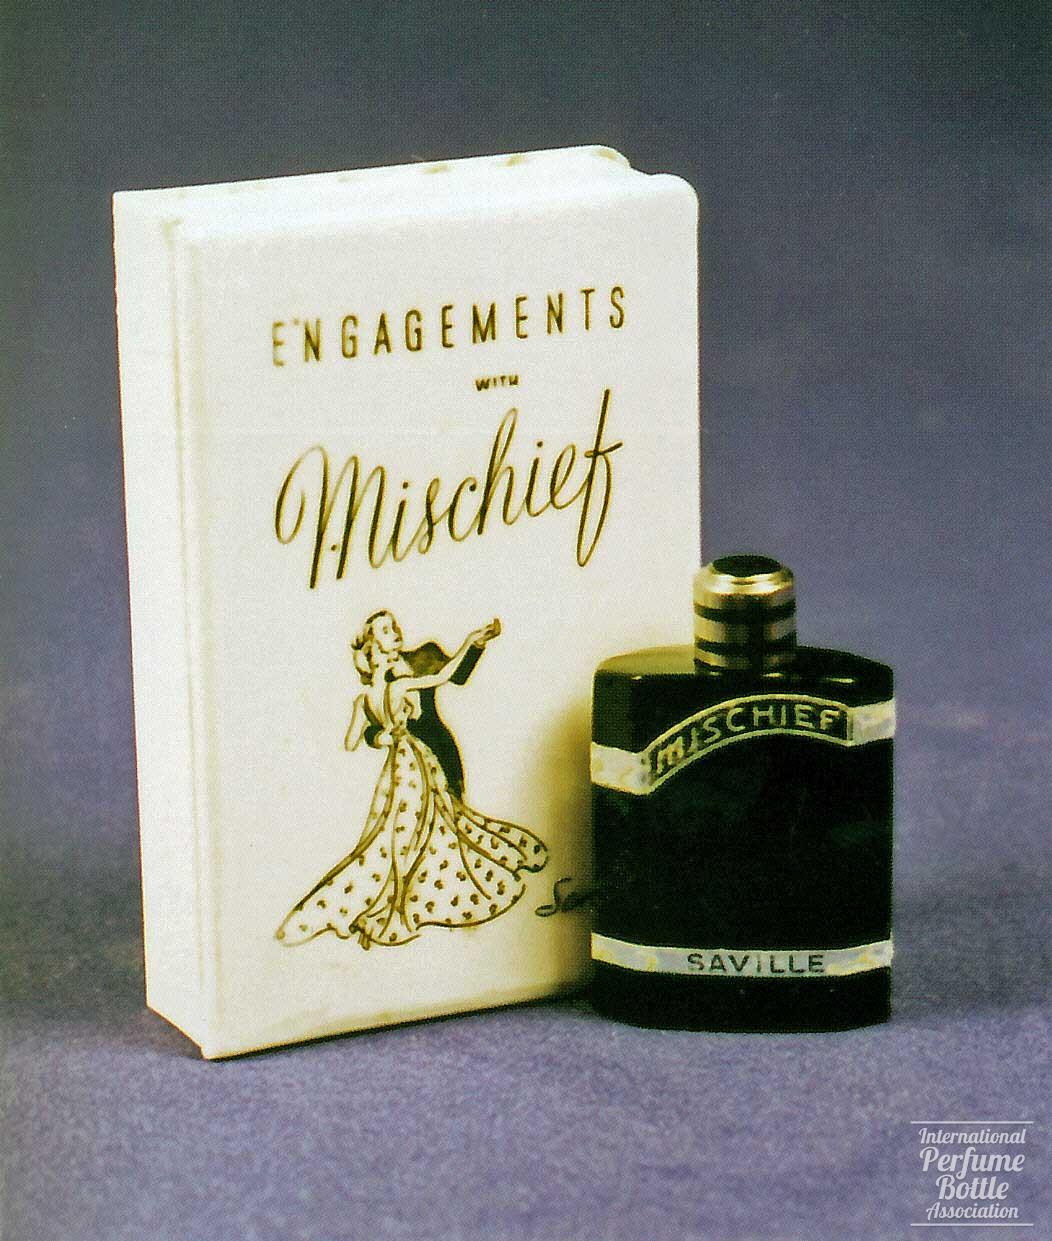 "Mischief" by Saville 1940 Engagements Calendar Presentation